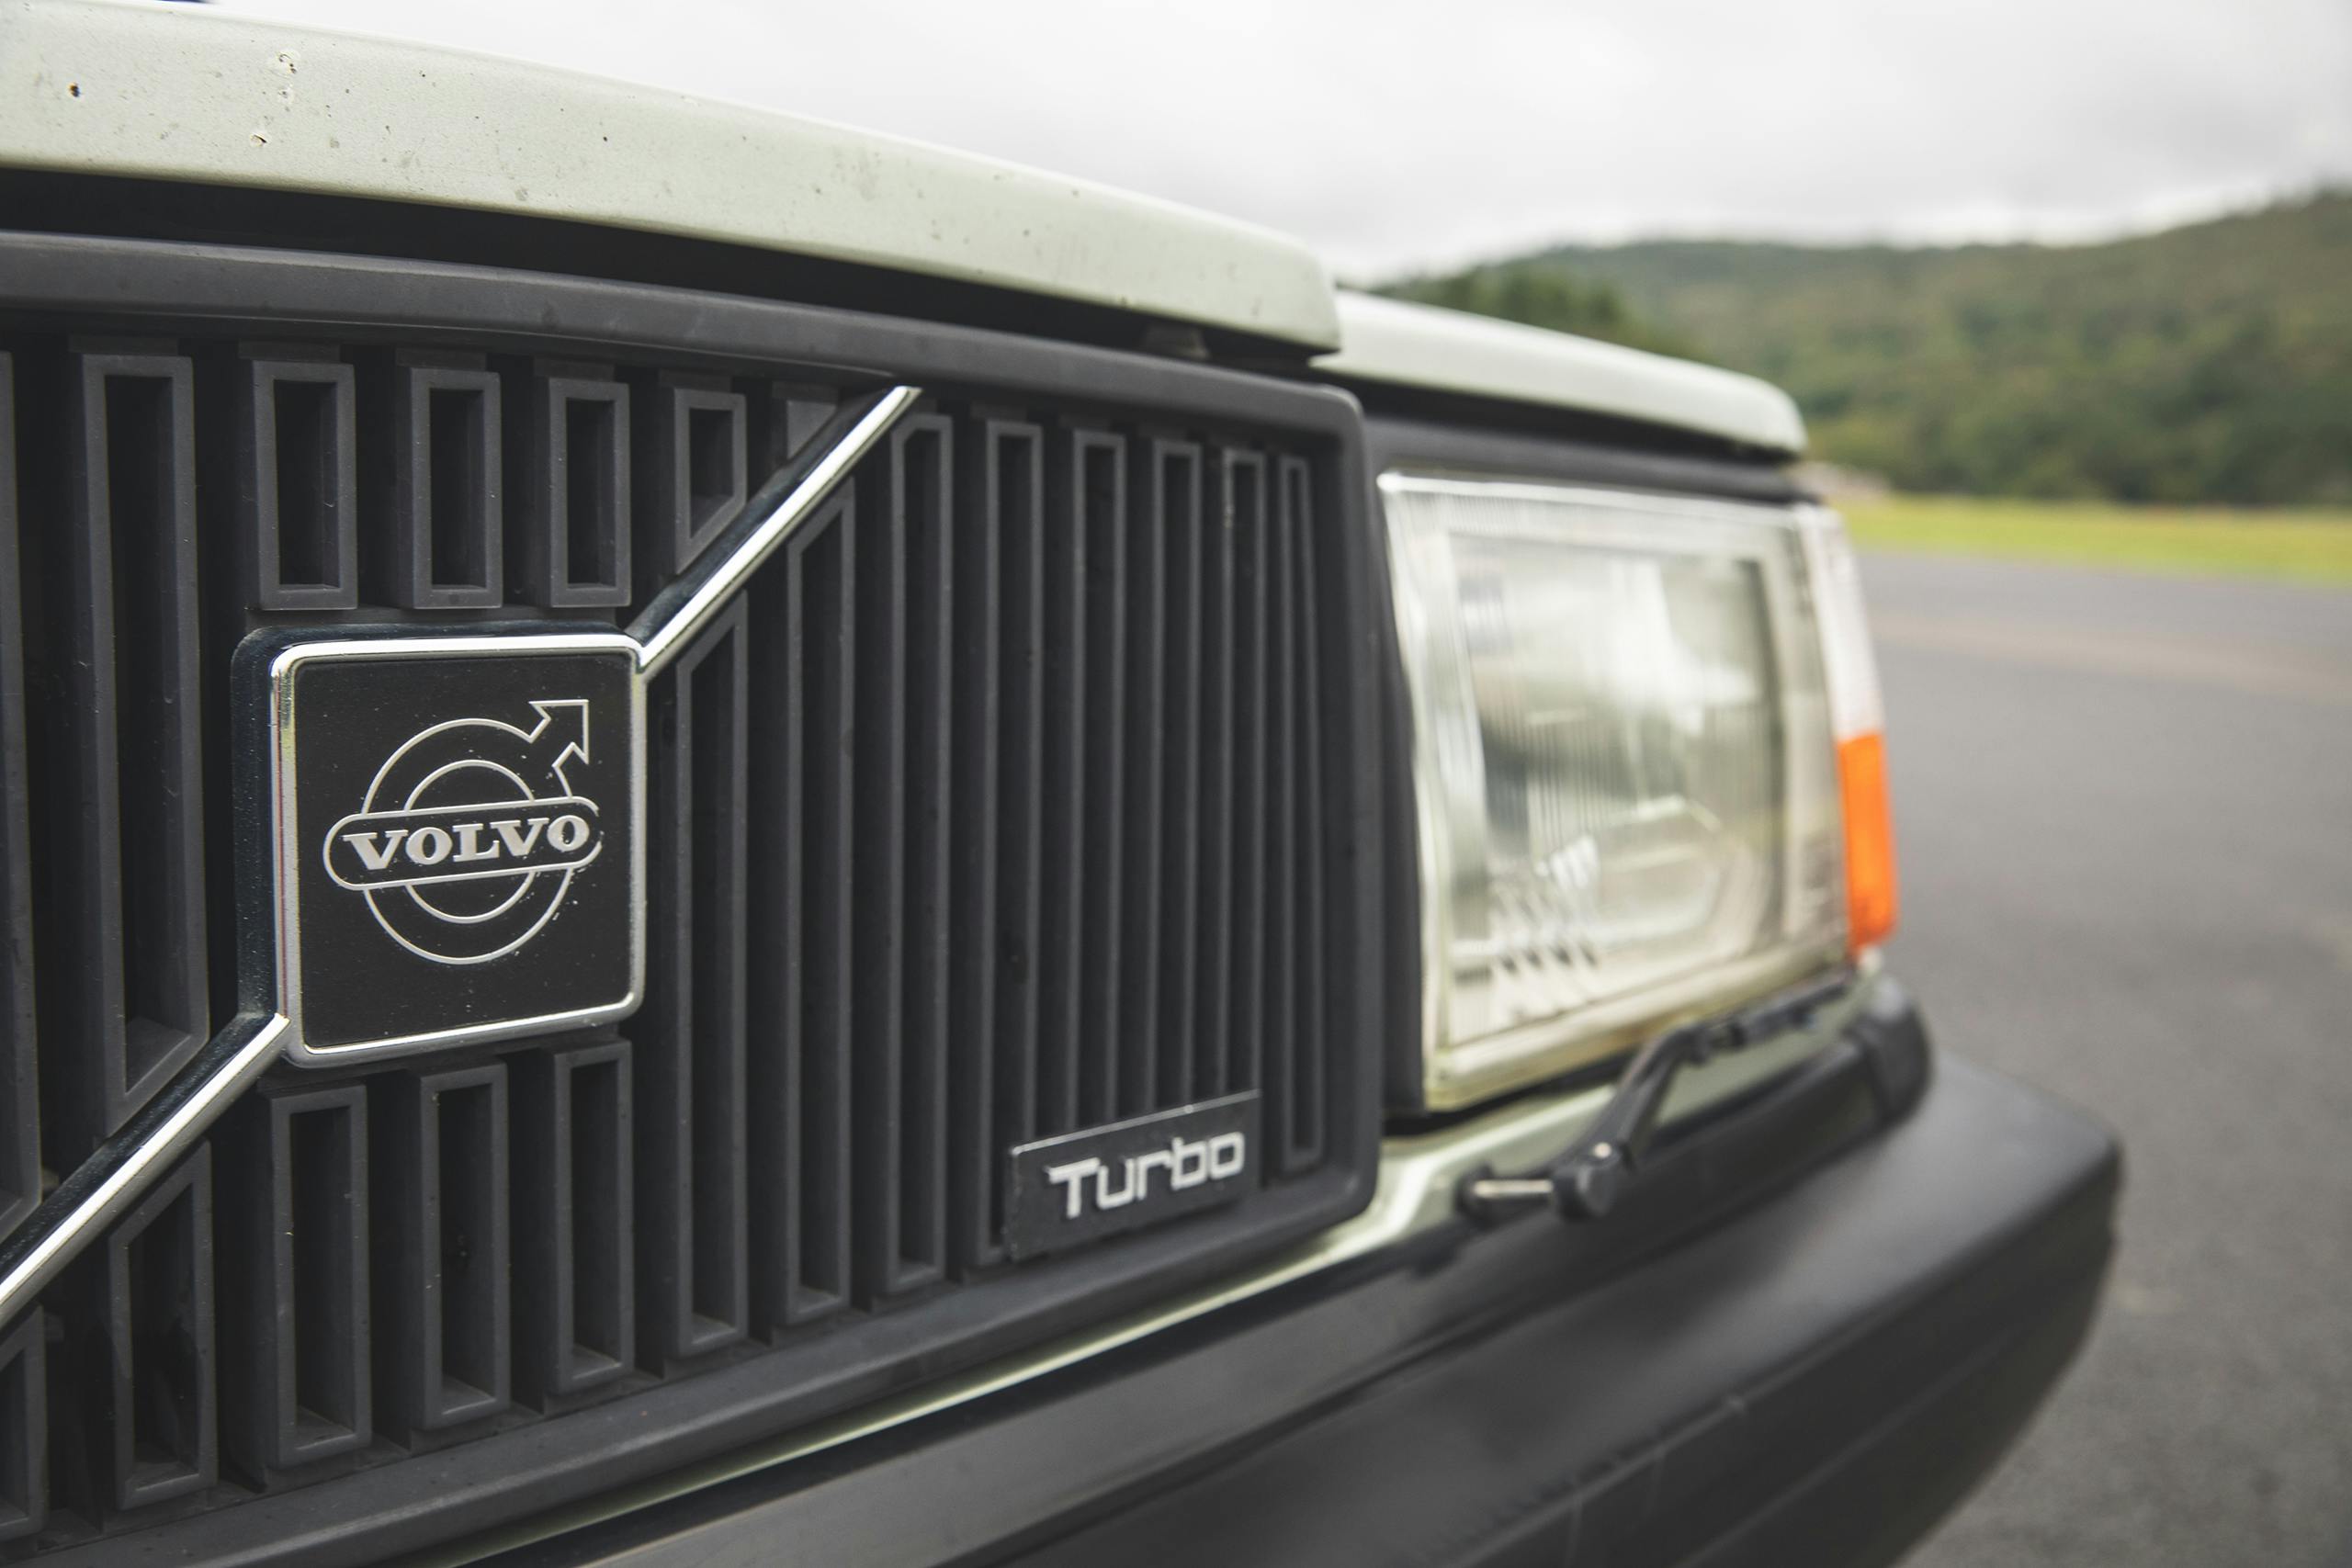 1983 Volvo 240 grille emblem detail